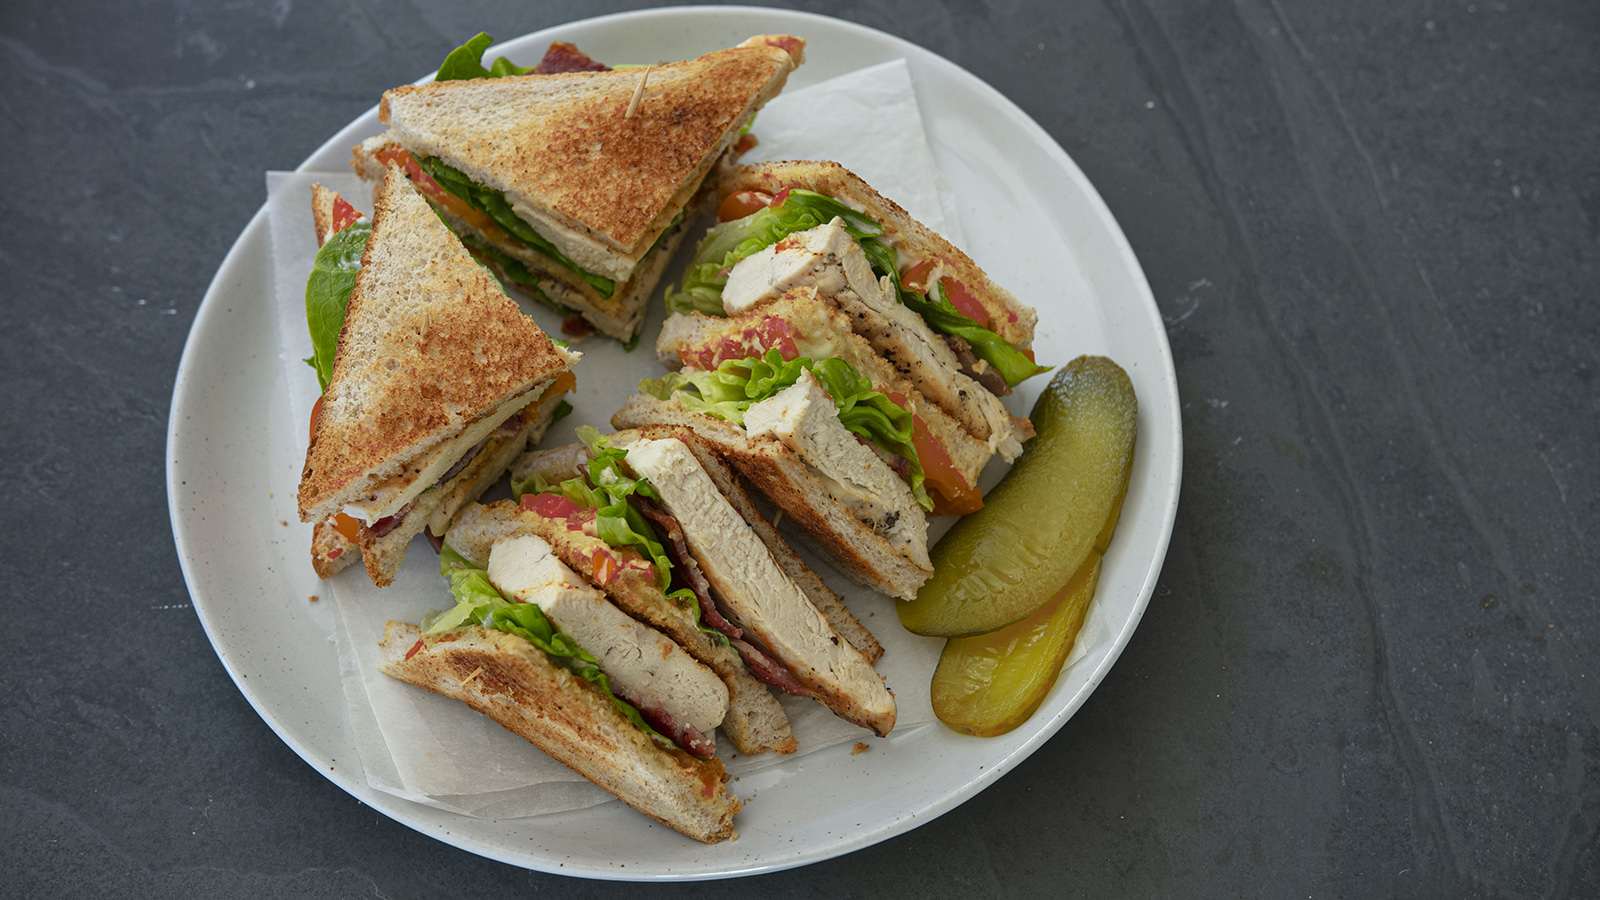 Classic Club Sandwich Recipe